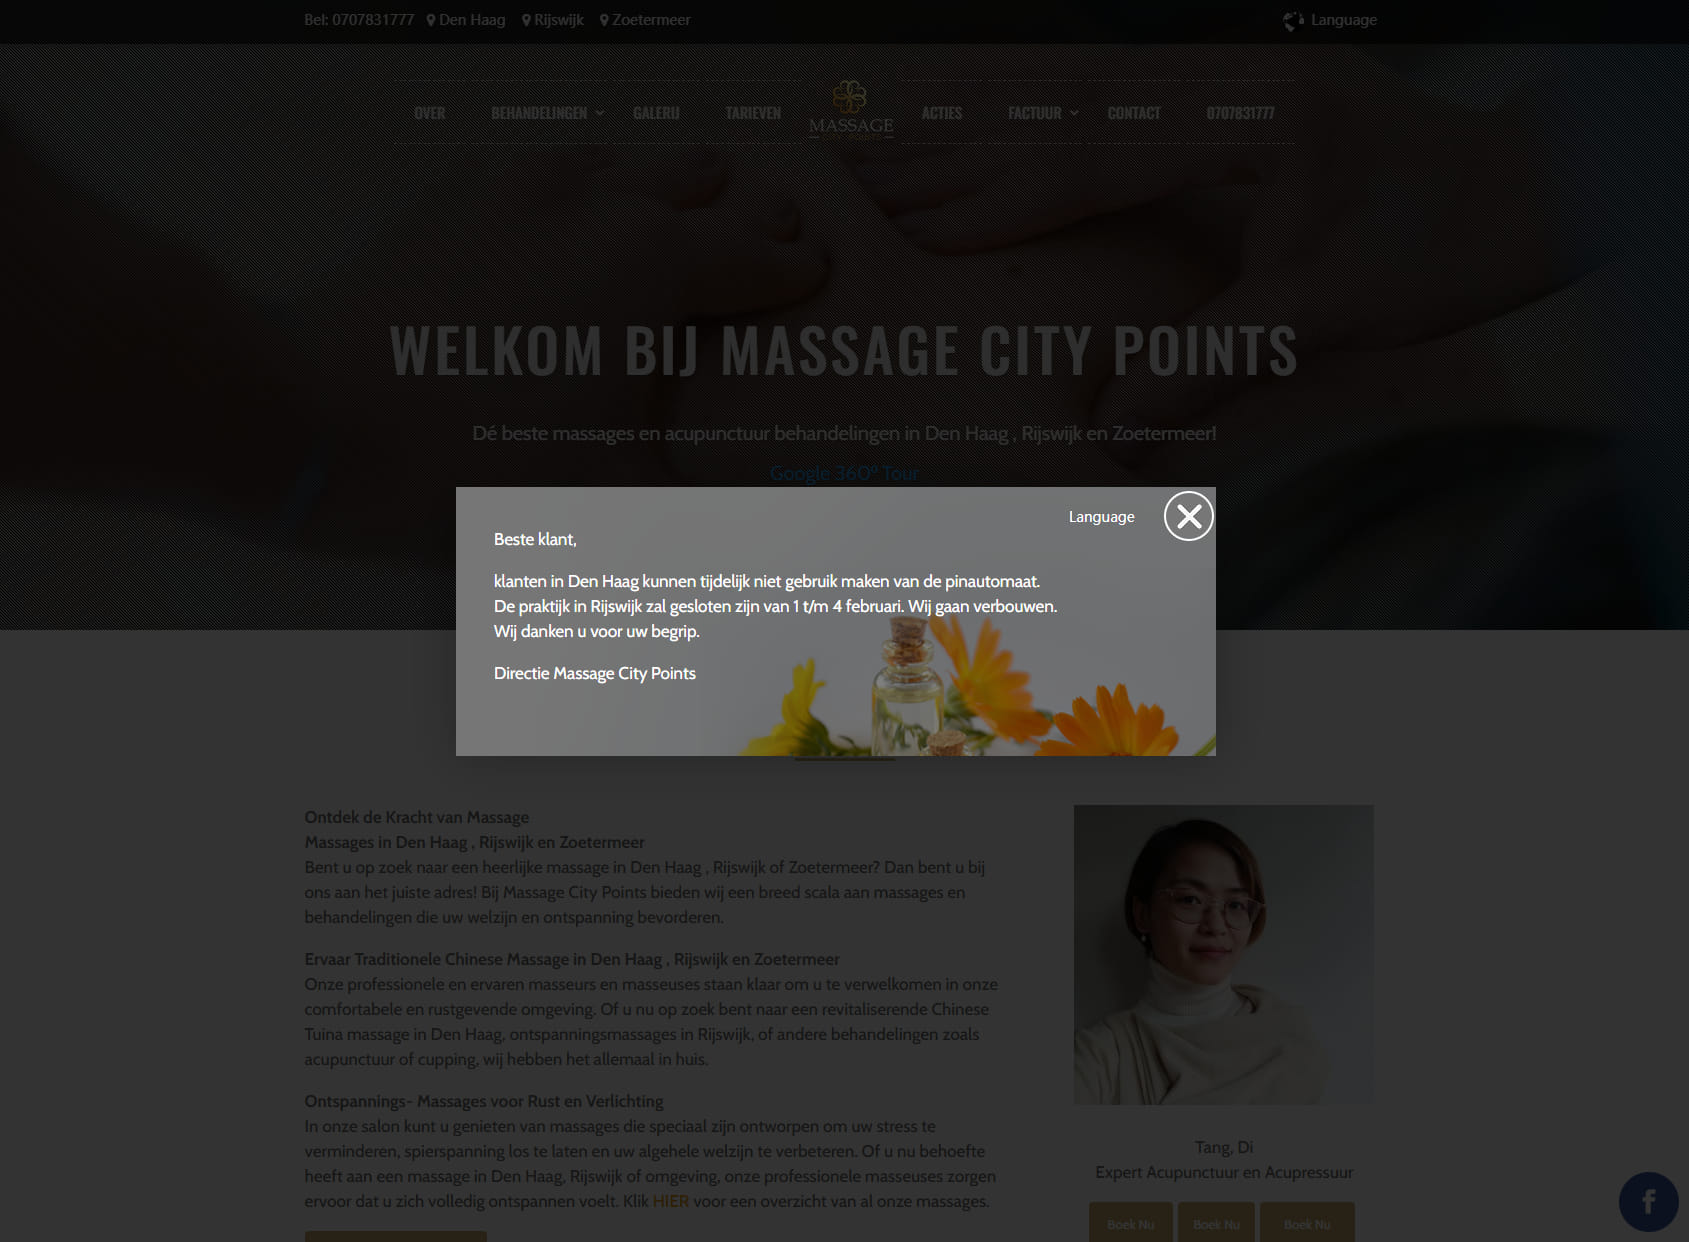 Massage City Points